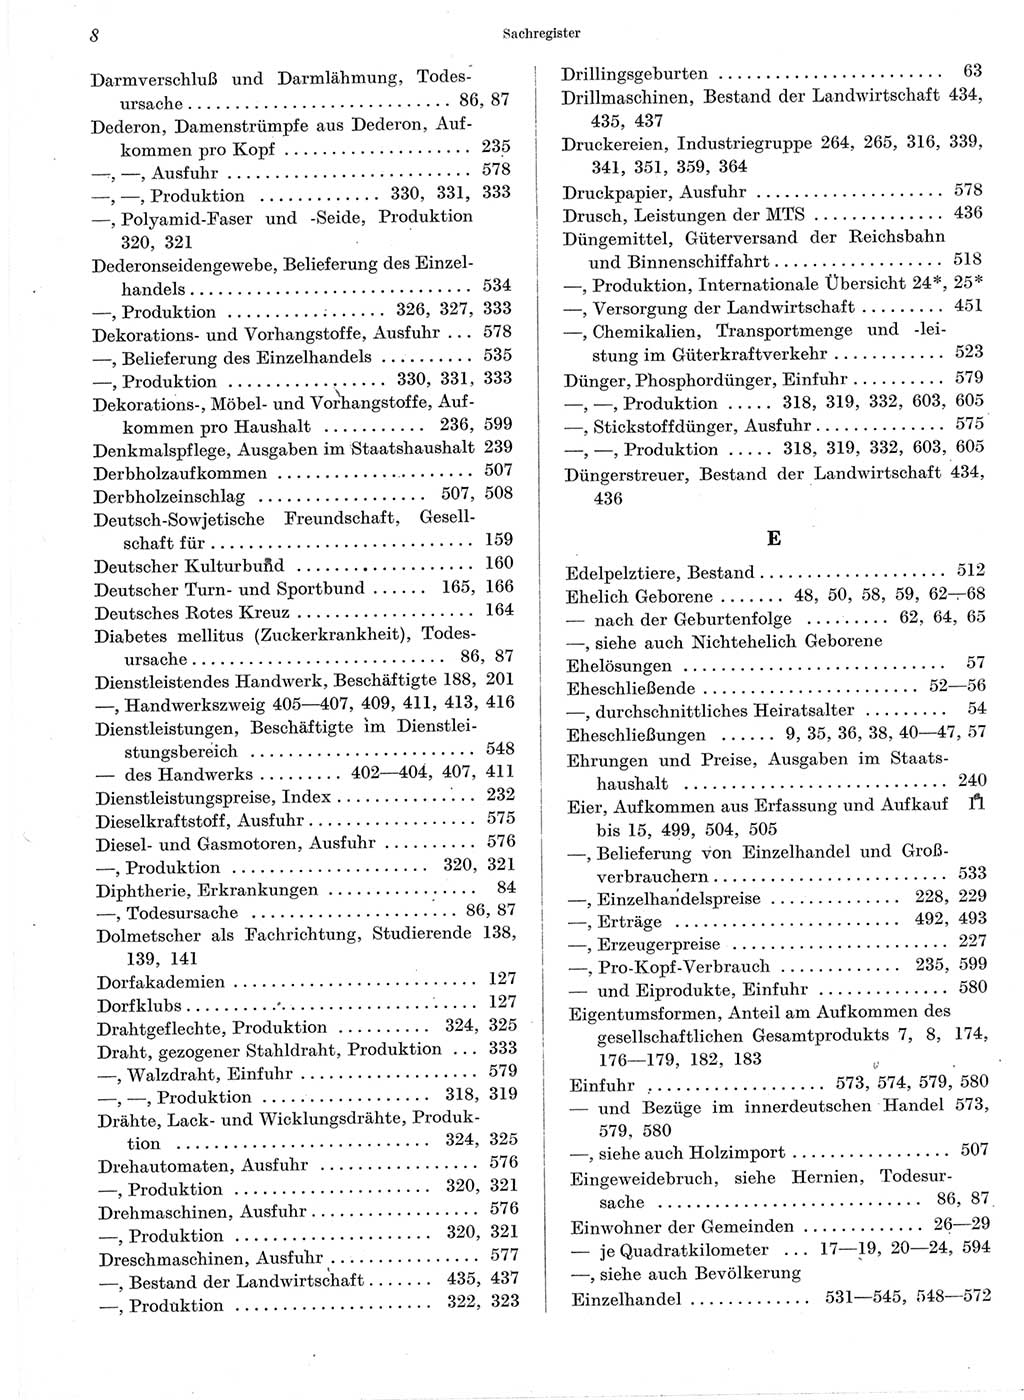 Statistisches Jahrbuch der Deutschen Demokratischen Republik (DDR) 1960-1961, Seite 8 (Stat. Jb. DDR 1960-1961, S. 8)